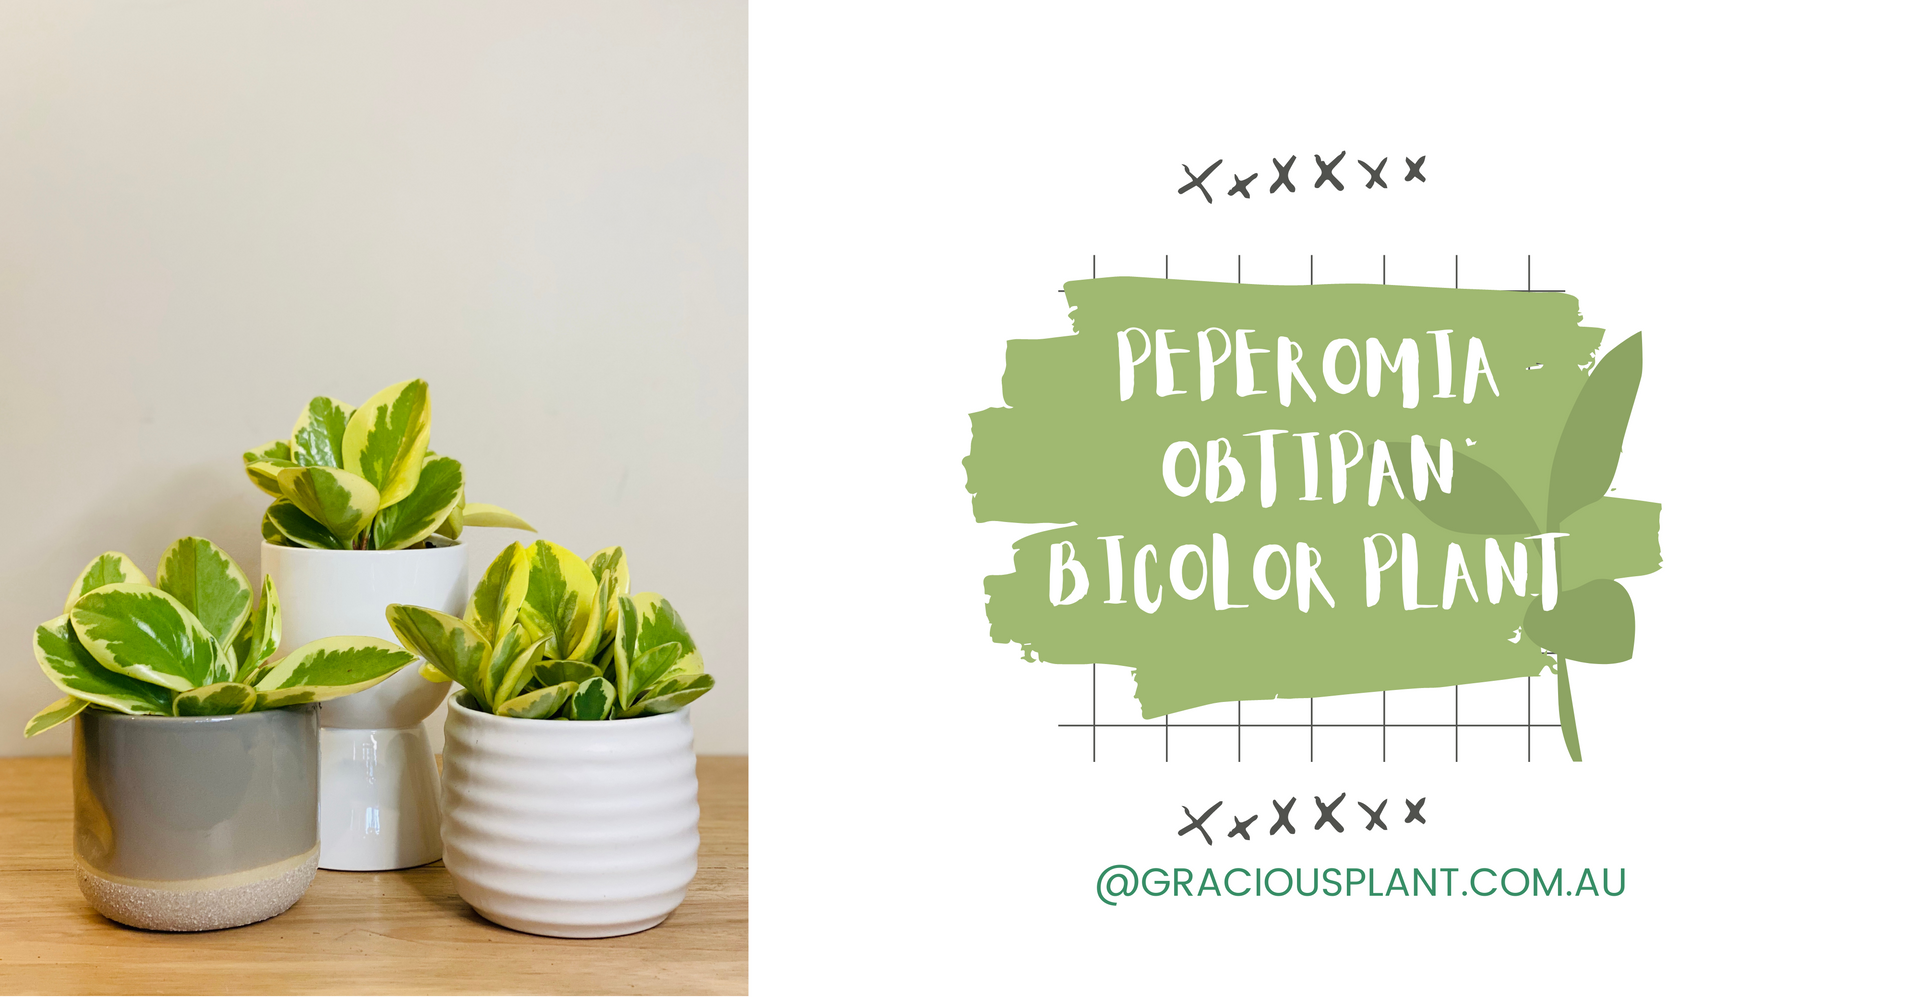 PEPEROMIA OBTIPAN BICOLOR PLANT